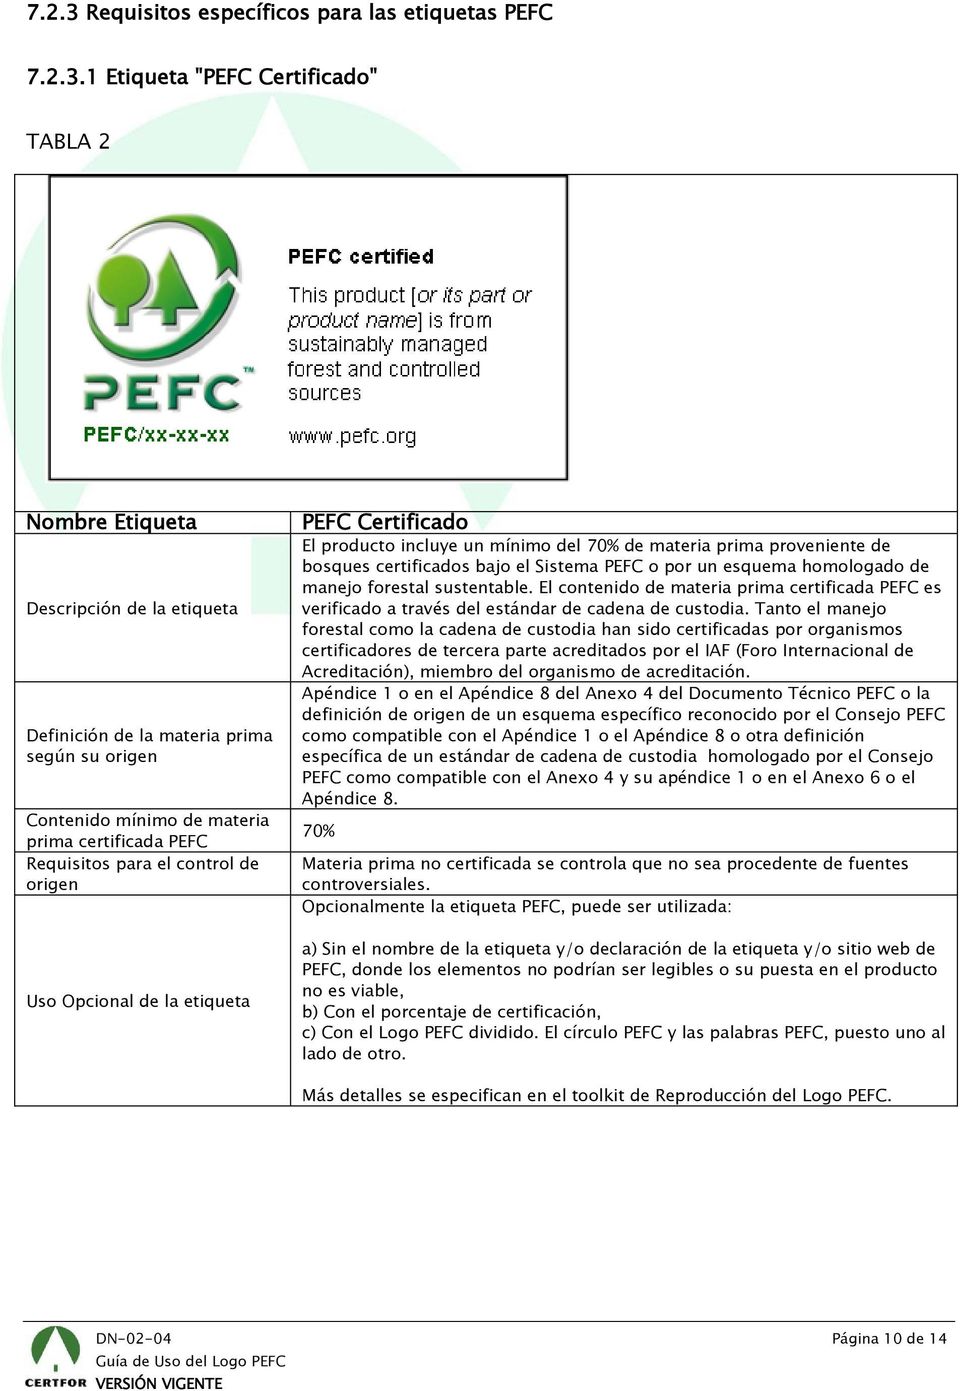 1 Etiqueta "PEFC Certificado" TABLA 2 Nombre Etiqueta Descripción de la etiqueta Definición de la materia prima según su origen Contenido mínimo de materia prima certificada PEFC Requisitos para el